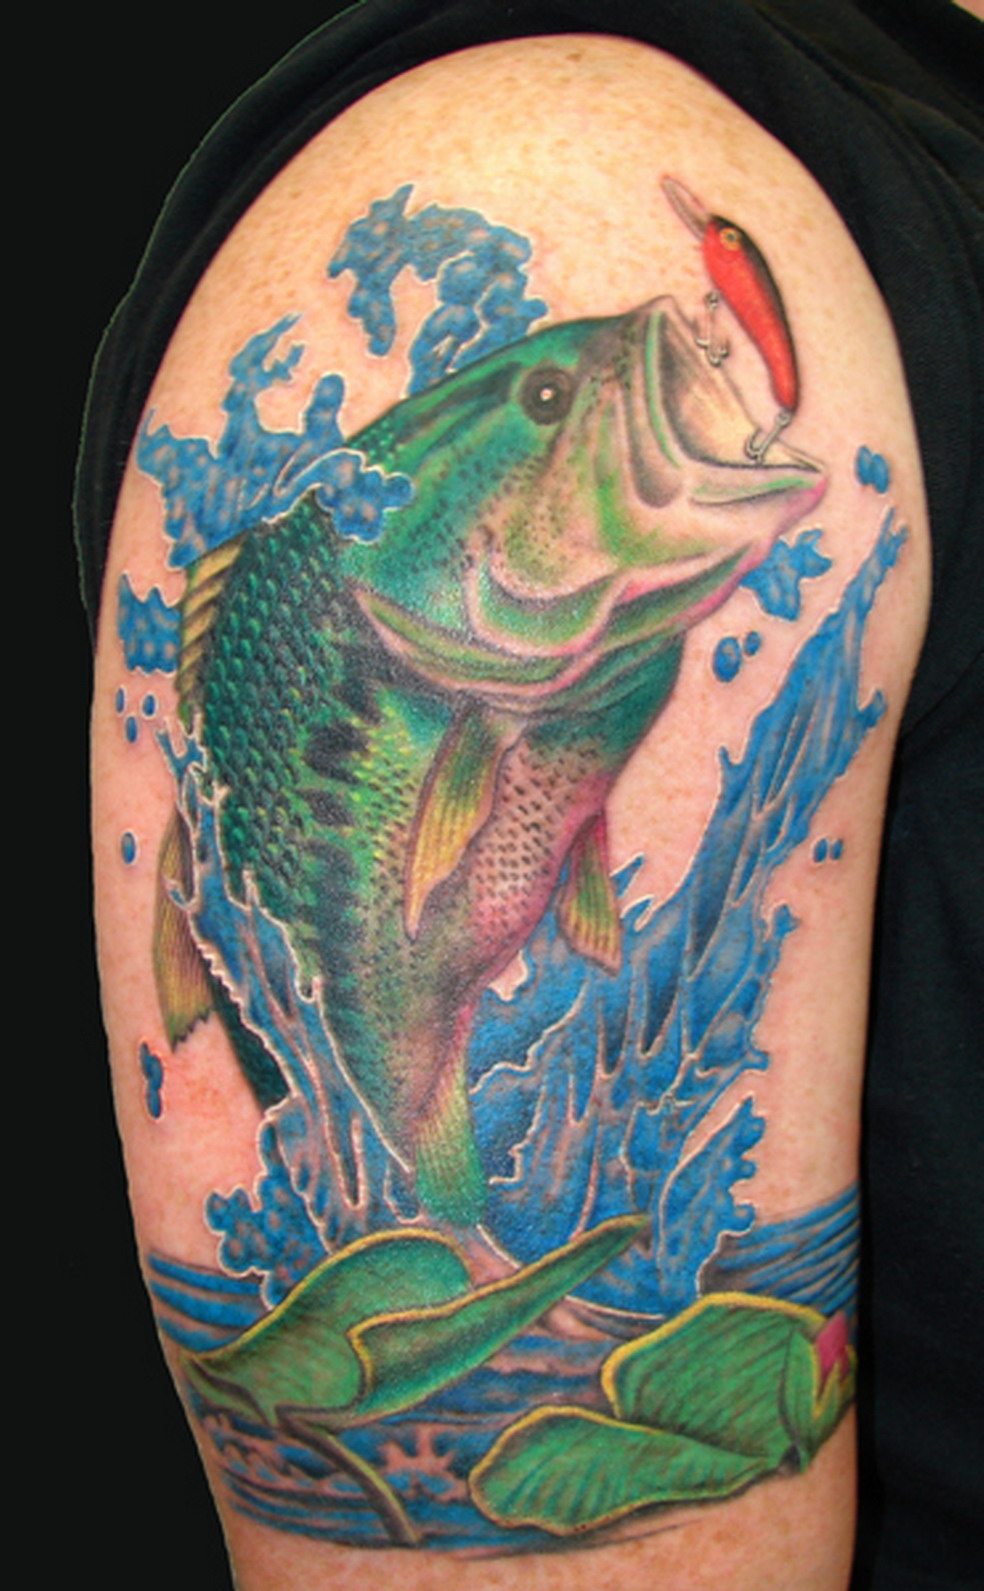 Fishing Tattoo Ideas  CUSTOM TATTOO DESIGN